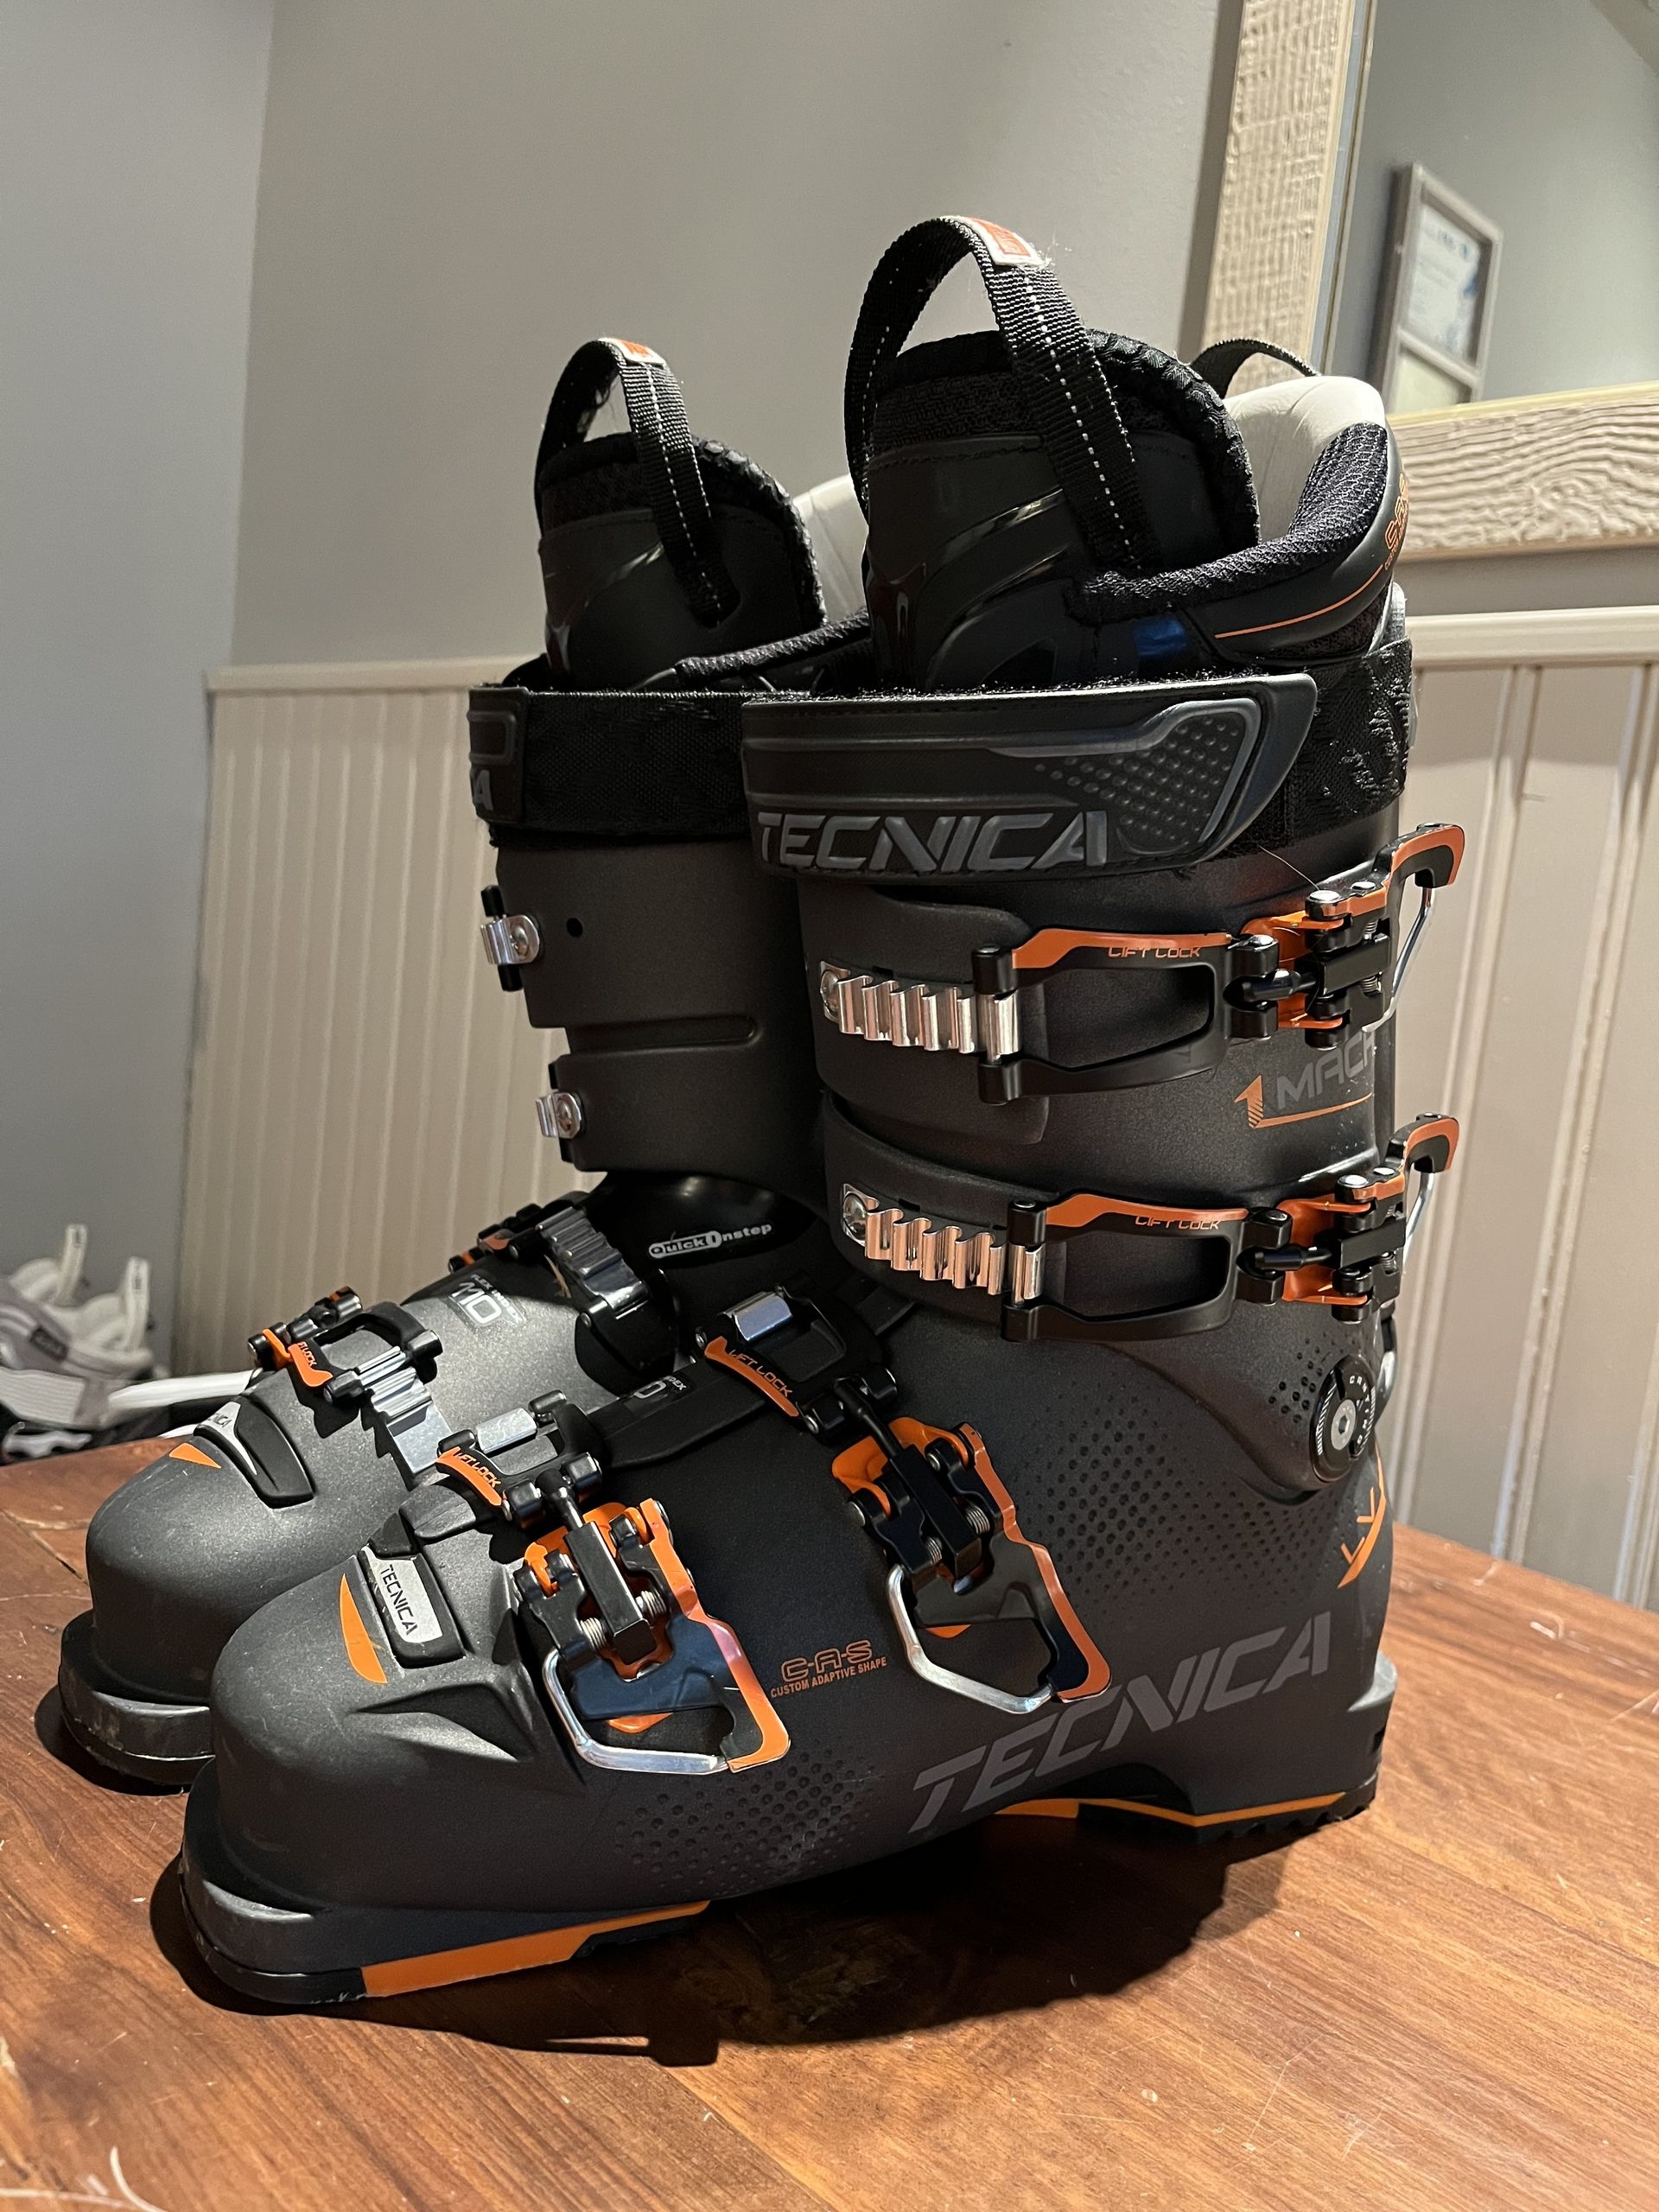 Vendo botas esquí TECNICA Flex 110 305mm 150€